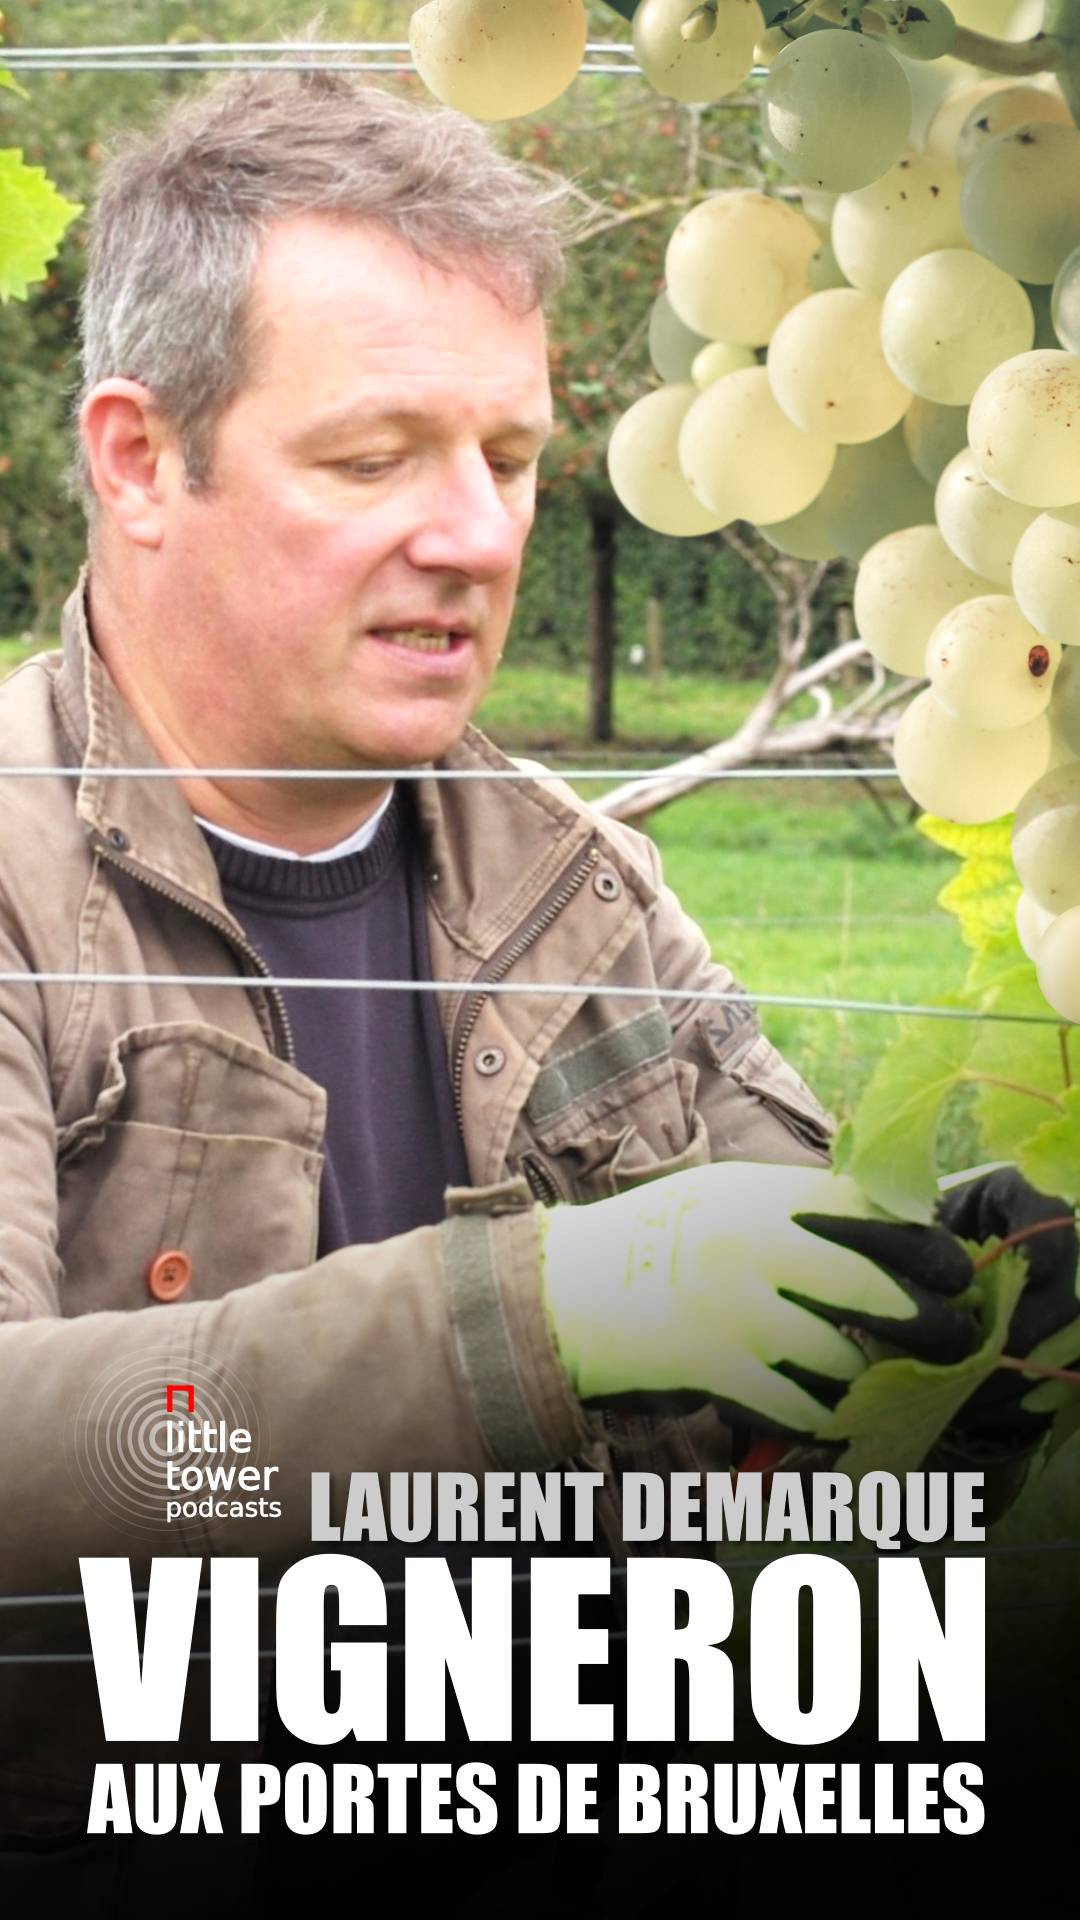 Du vin belge, du champagne aux portes de Bruxelles. Laurent Demarque, vigneron.